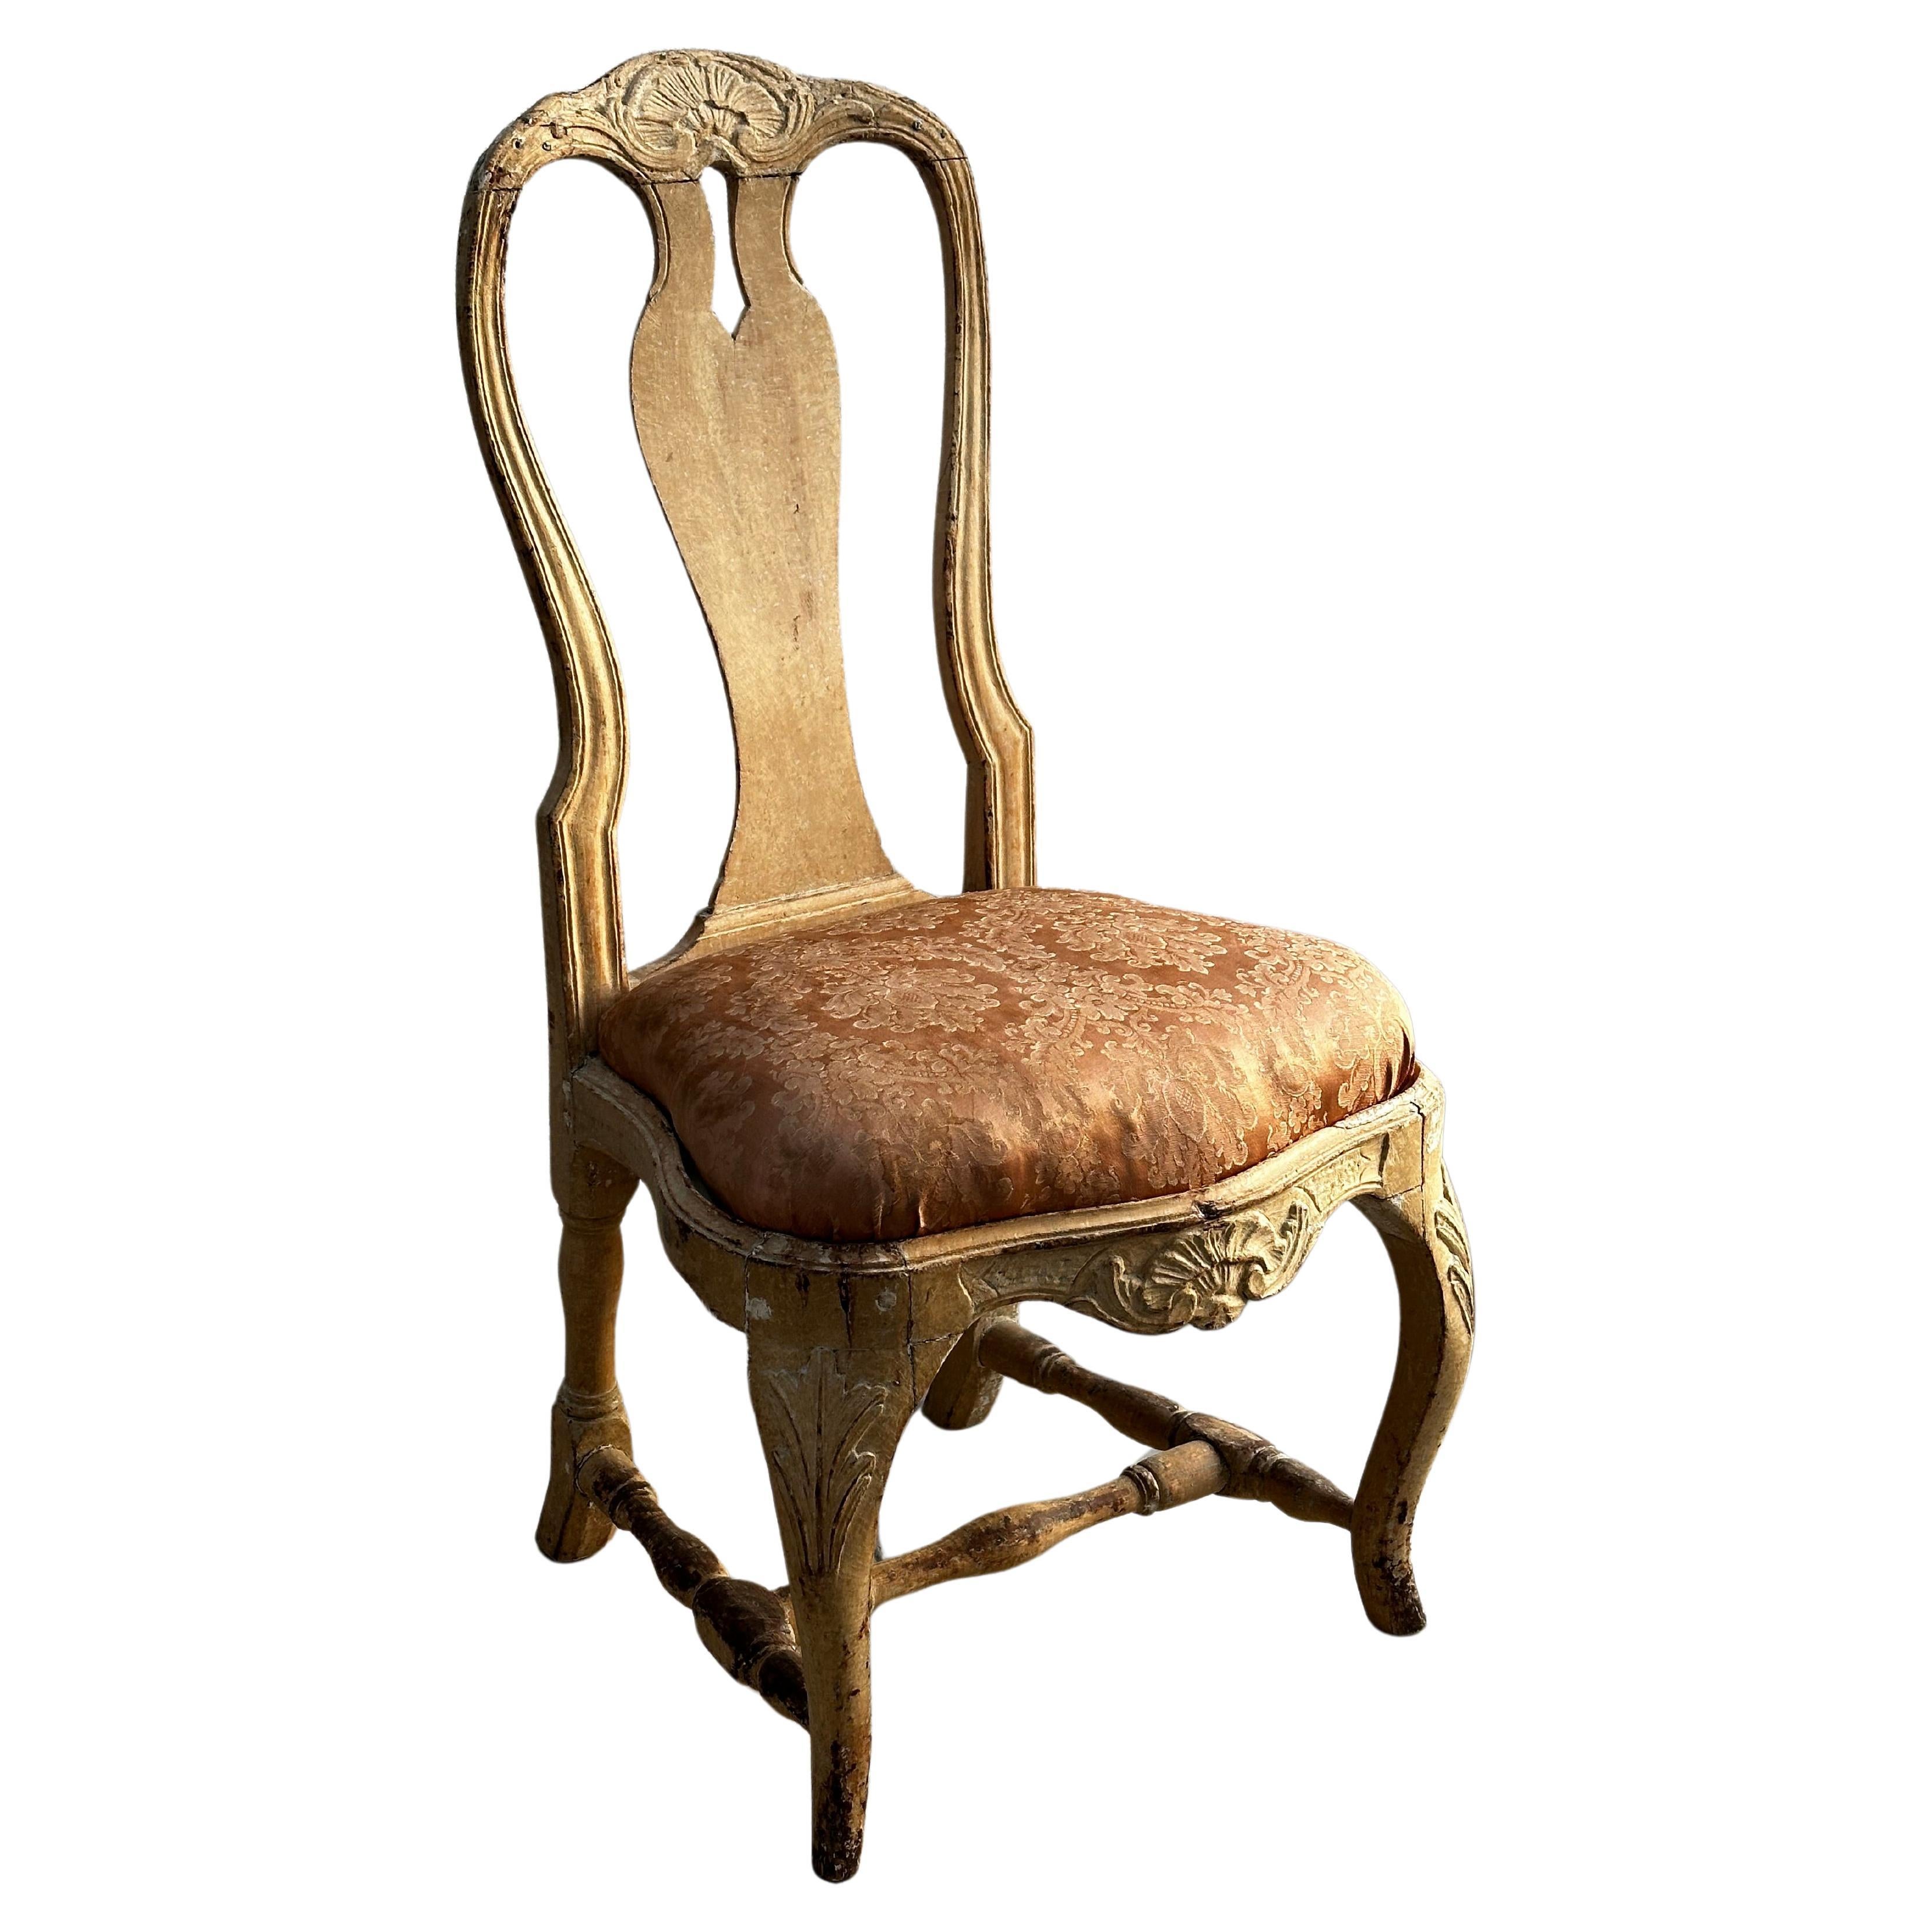 Chaise rococo du 18ème siècle, avec couleur d'origine